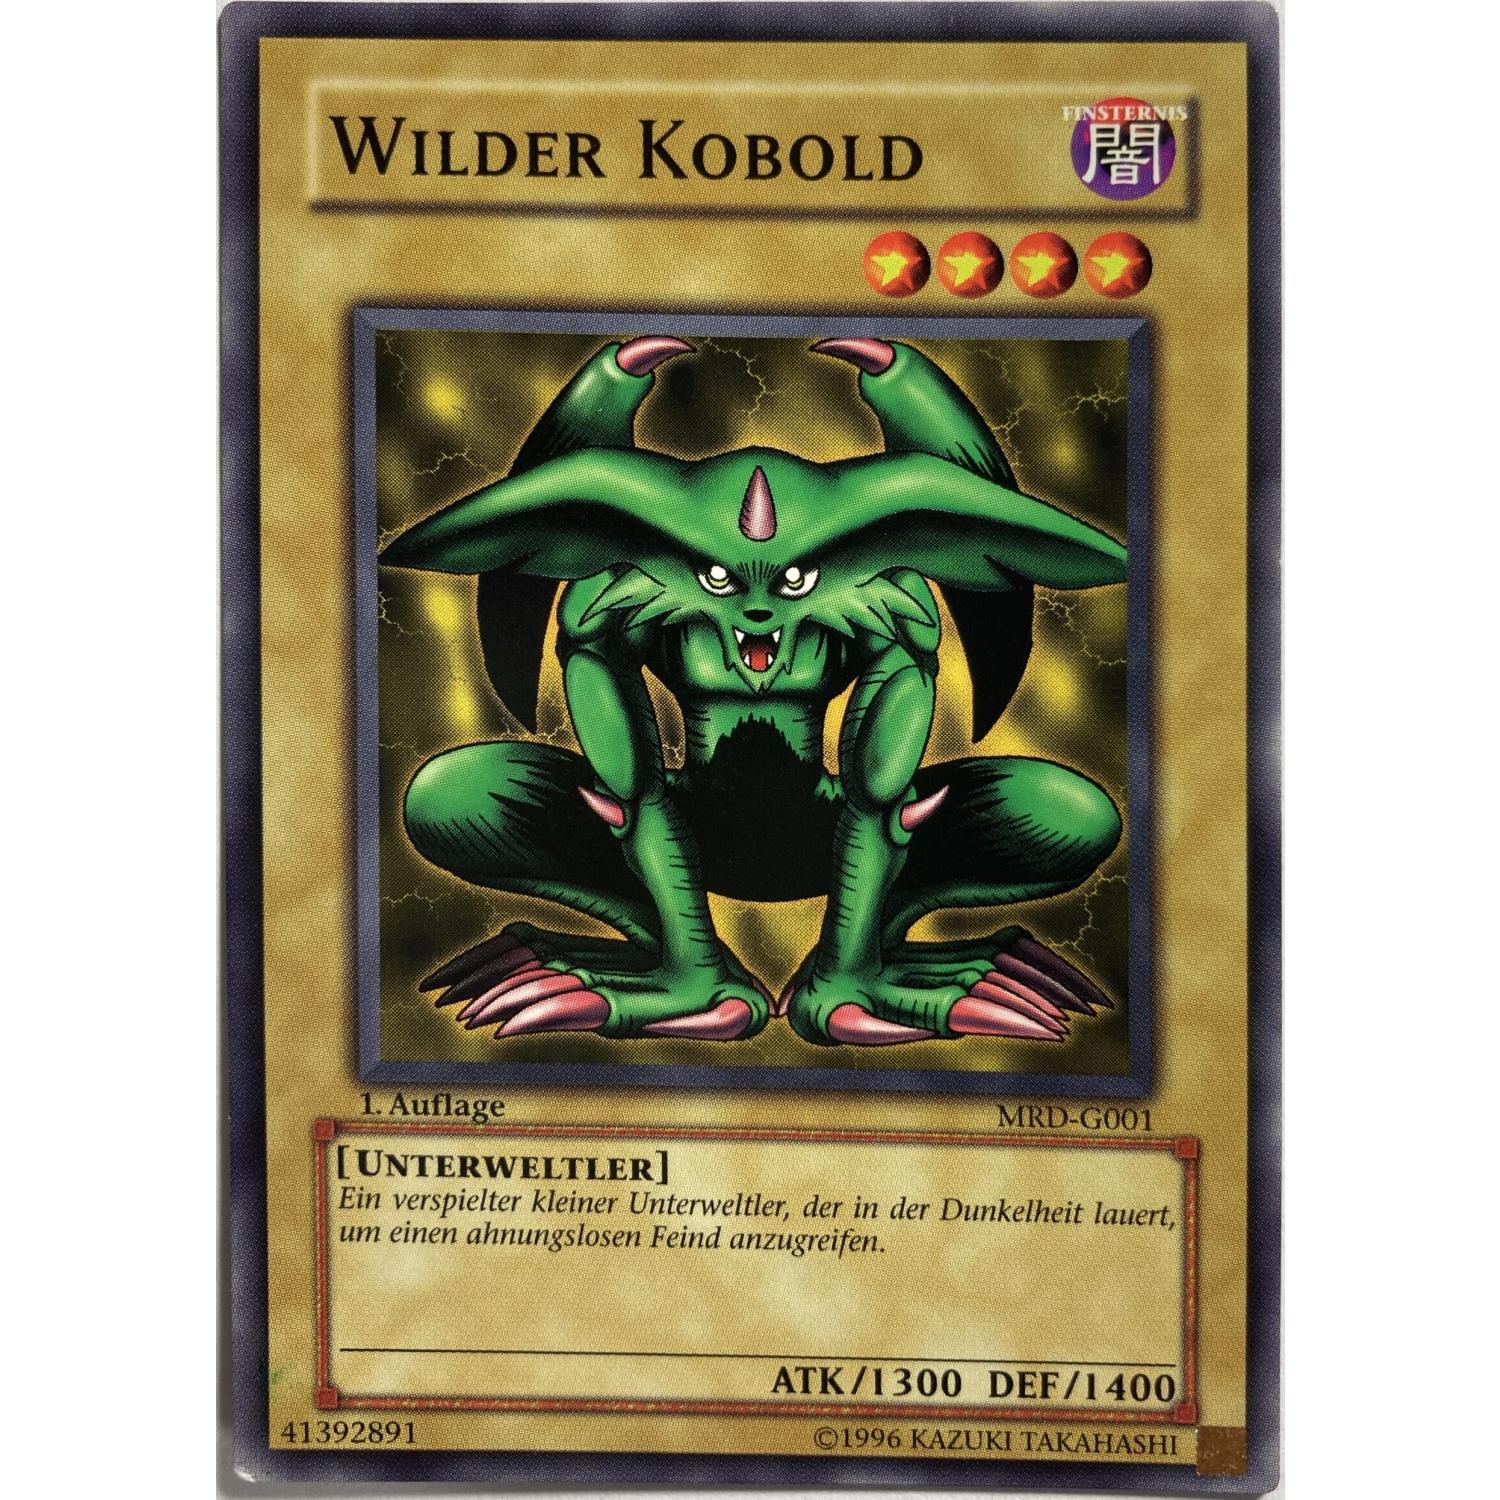 Wilder Kobold 1. Auflage MRD-G001 Common